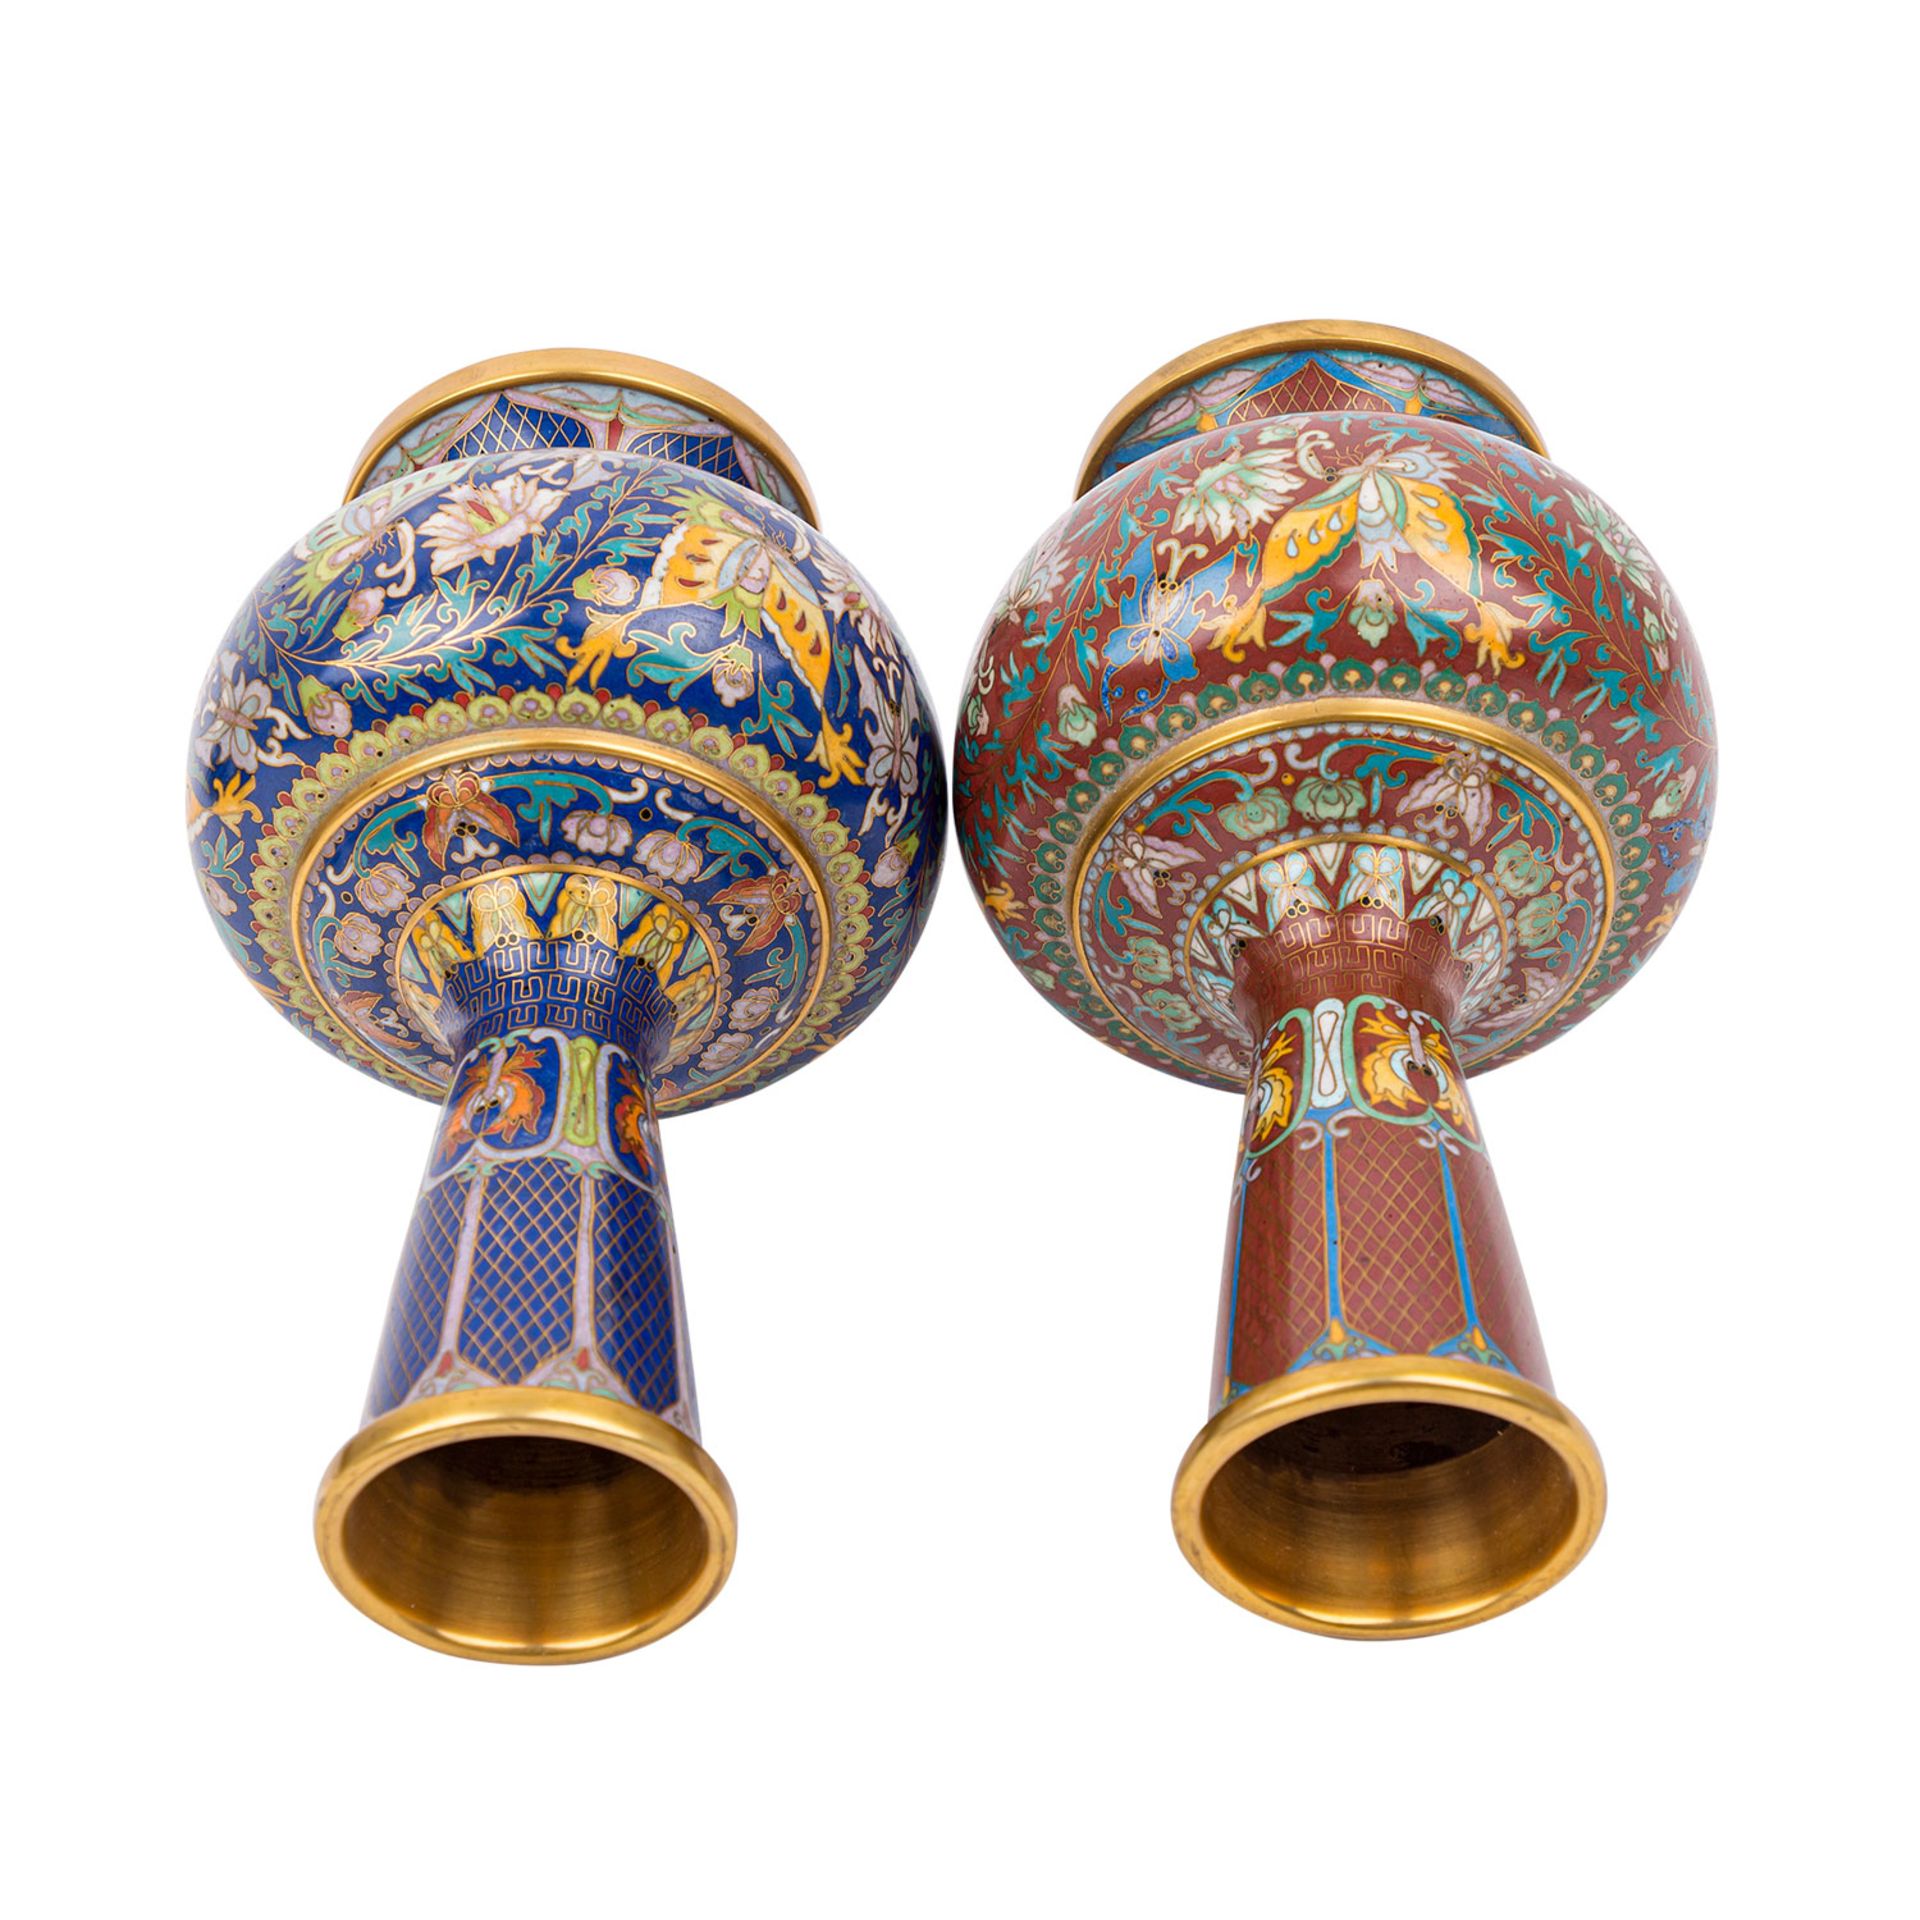 Paar feine Cloisonné Vasen. CHINA, 20. Jh..Bauchige Form mit hohem Hals, auf rundem Standfuß. Eine - Bild 4 aus 9